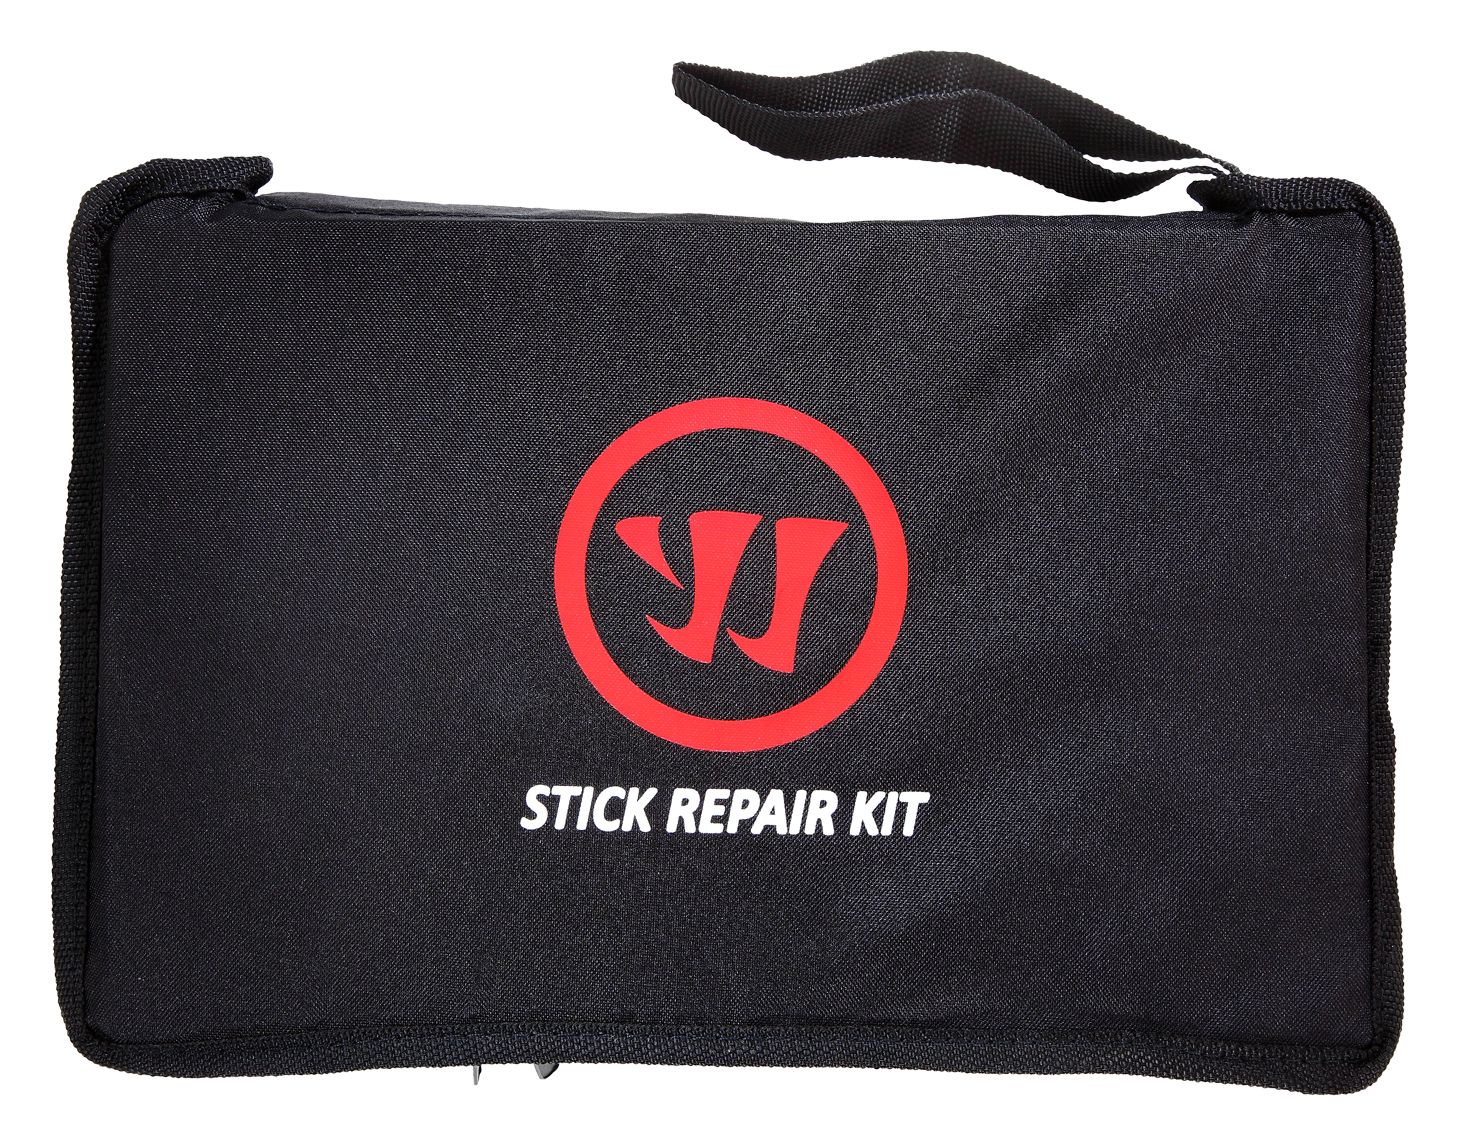 Stick Repair Kit